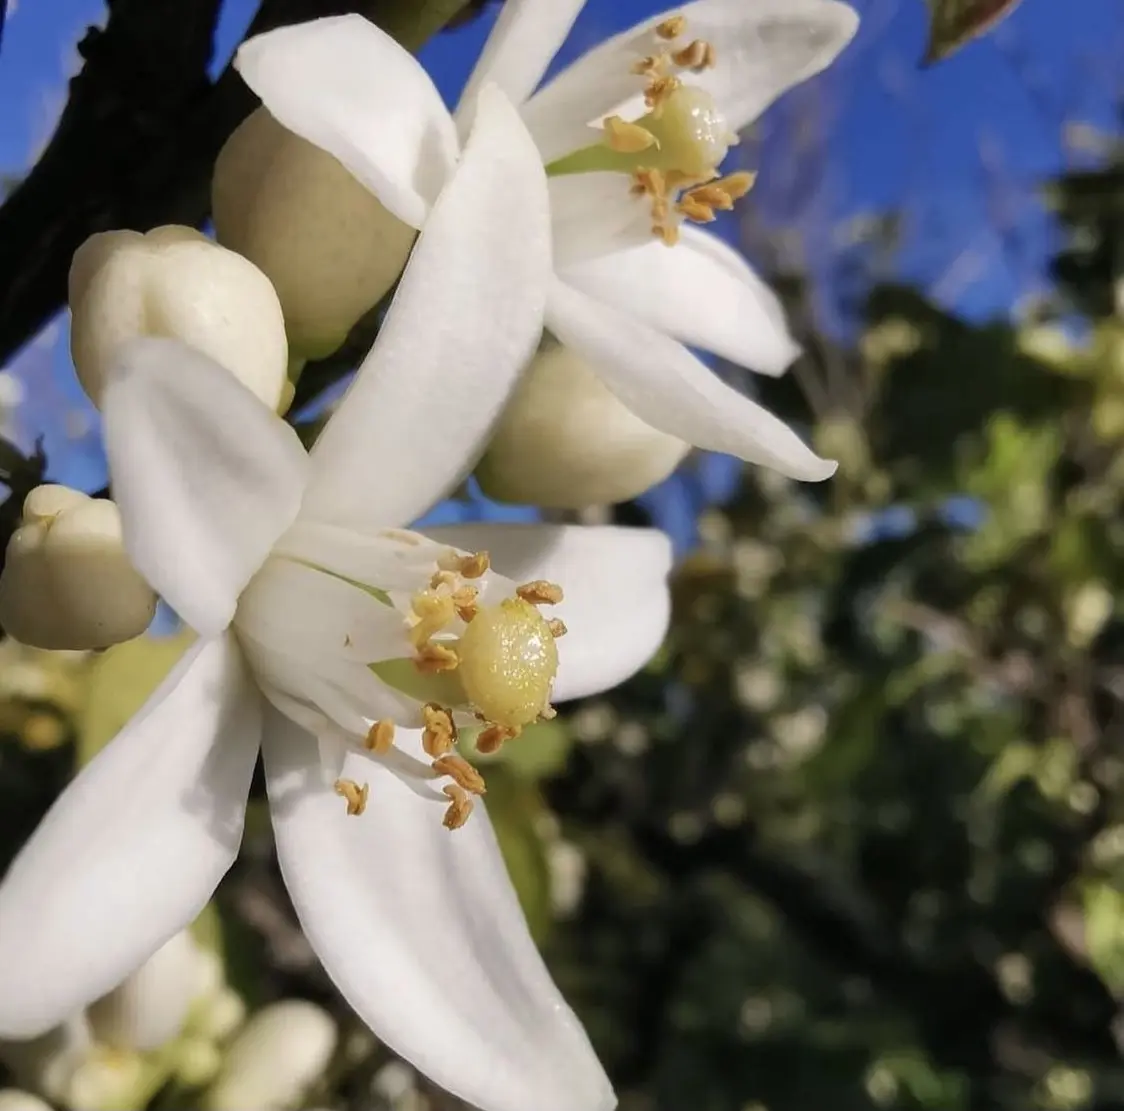 fiori di zagara - Quando fioriscono le zagare in Sicilia